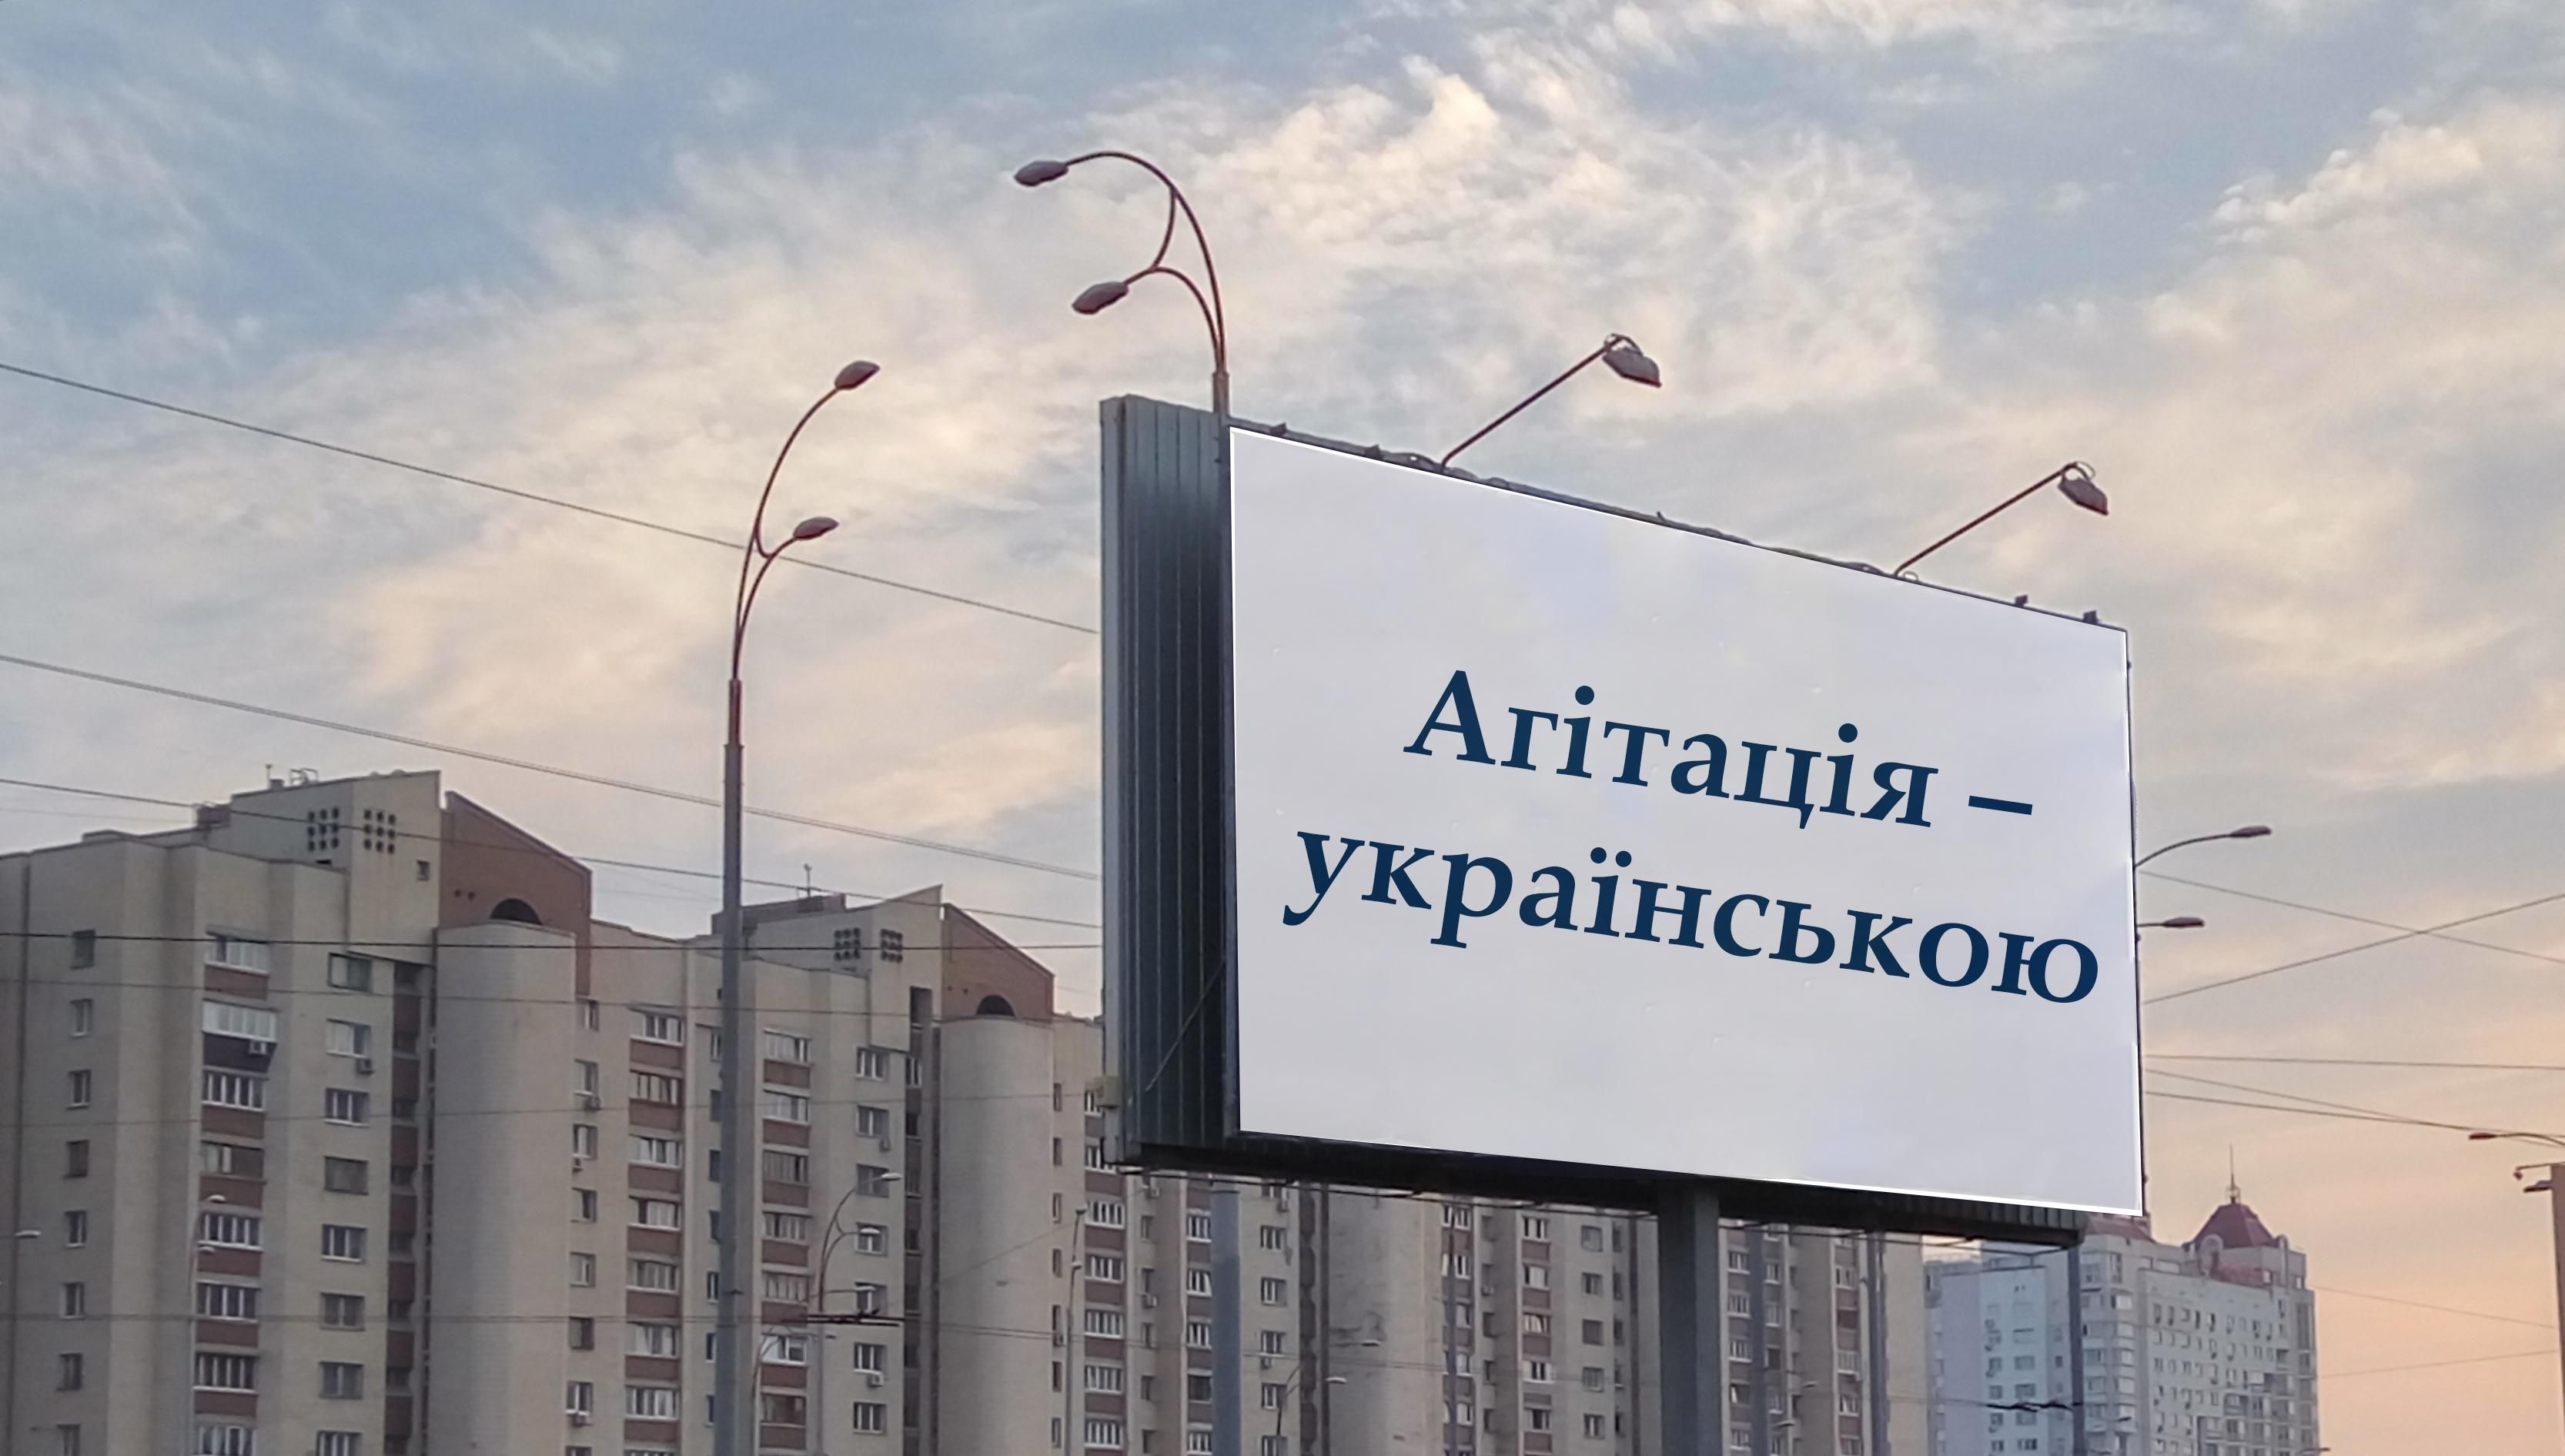 Вступил в силу закон о госязыке: с 16 июля политическая агитация должна быть украиноязычной